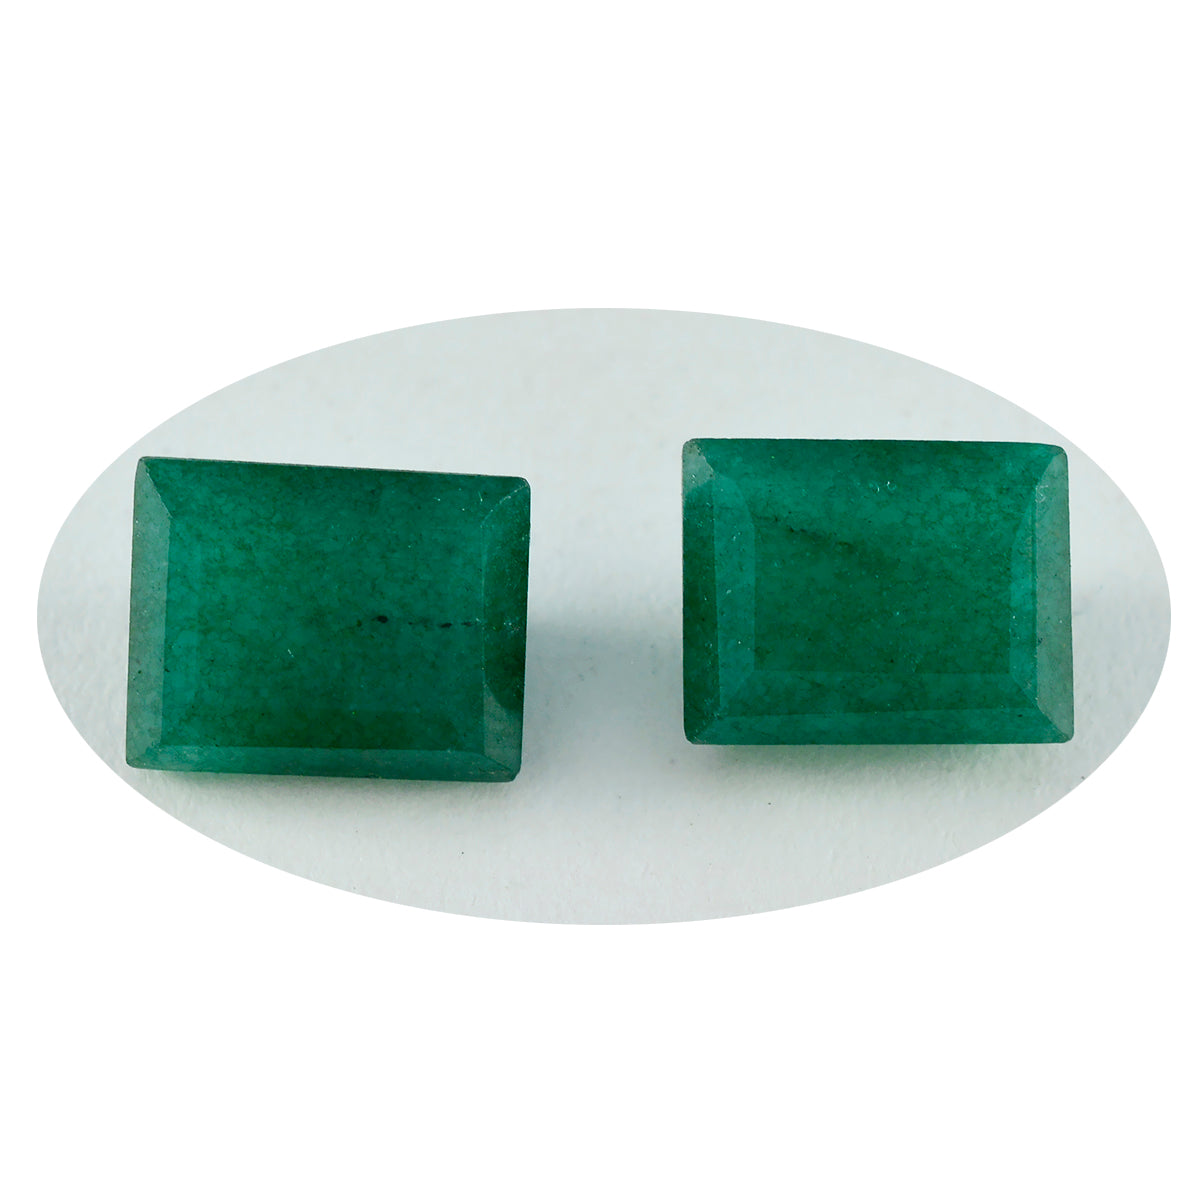 Riyogems 1 pieza jaspe verde auténtico facetado 4x4 mm forma de corazón gemas de calidad impresionante